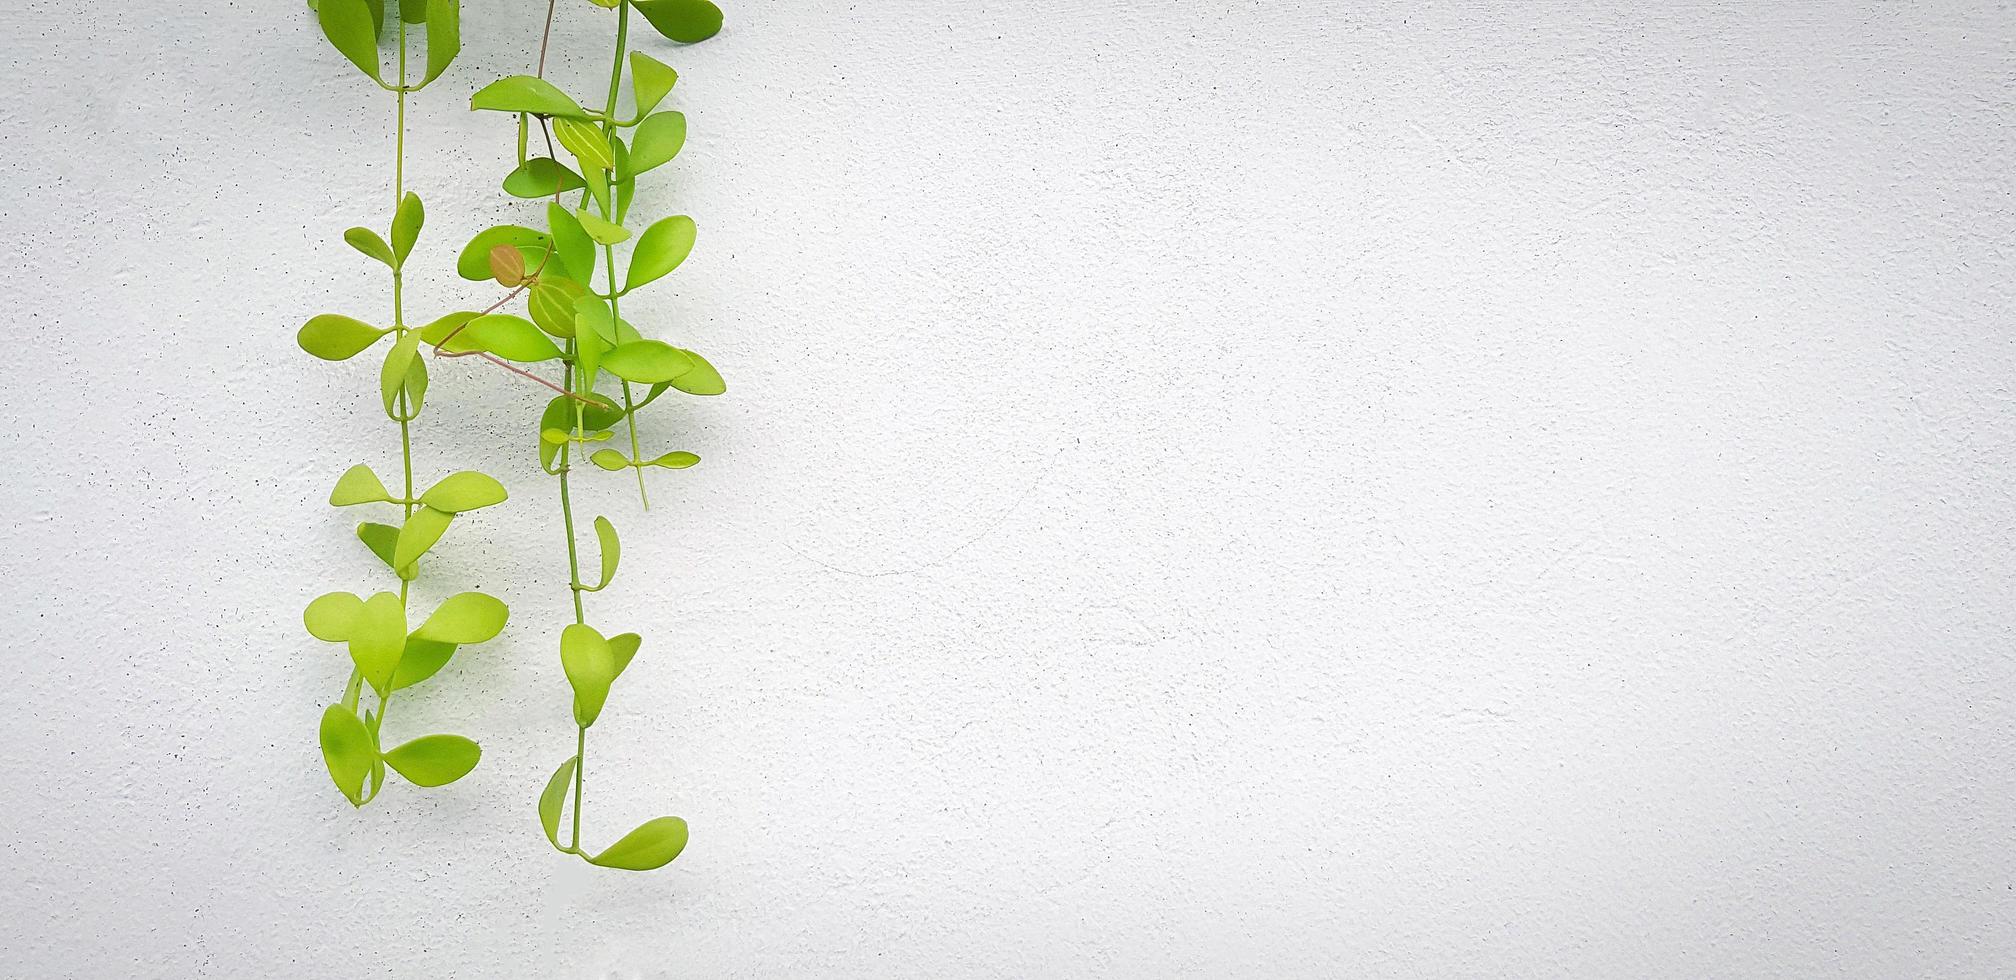 grüne ranke, kriechende pflanze auf weißem wandhintergrund mit kopienraum rechts. Blätter auf Tapeten. Struktur und Schönheit im Naturkonzept. foto